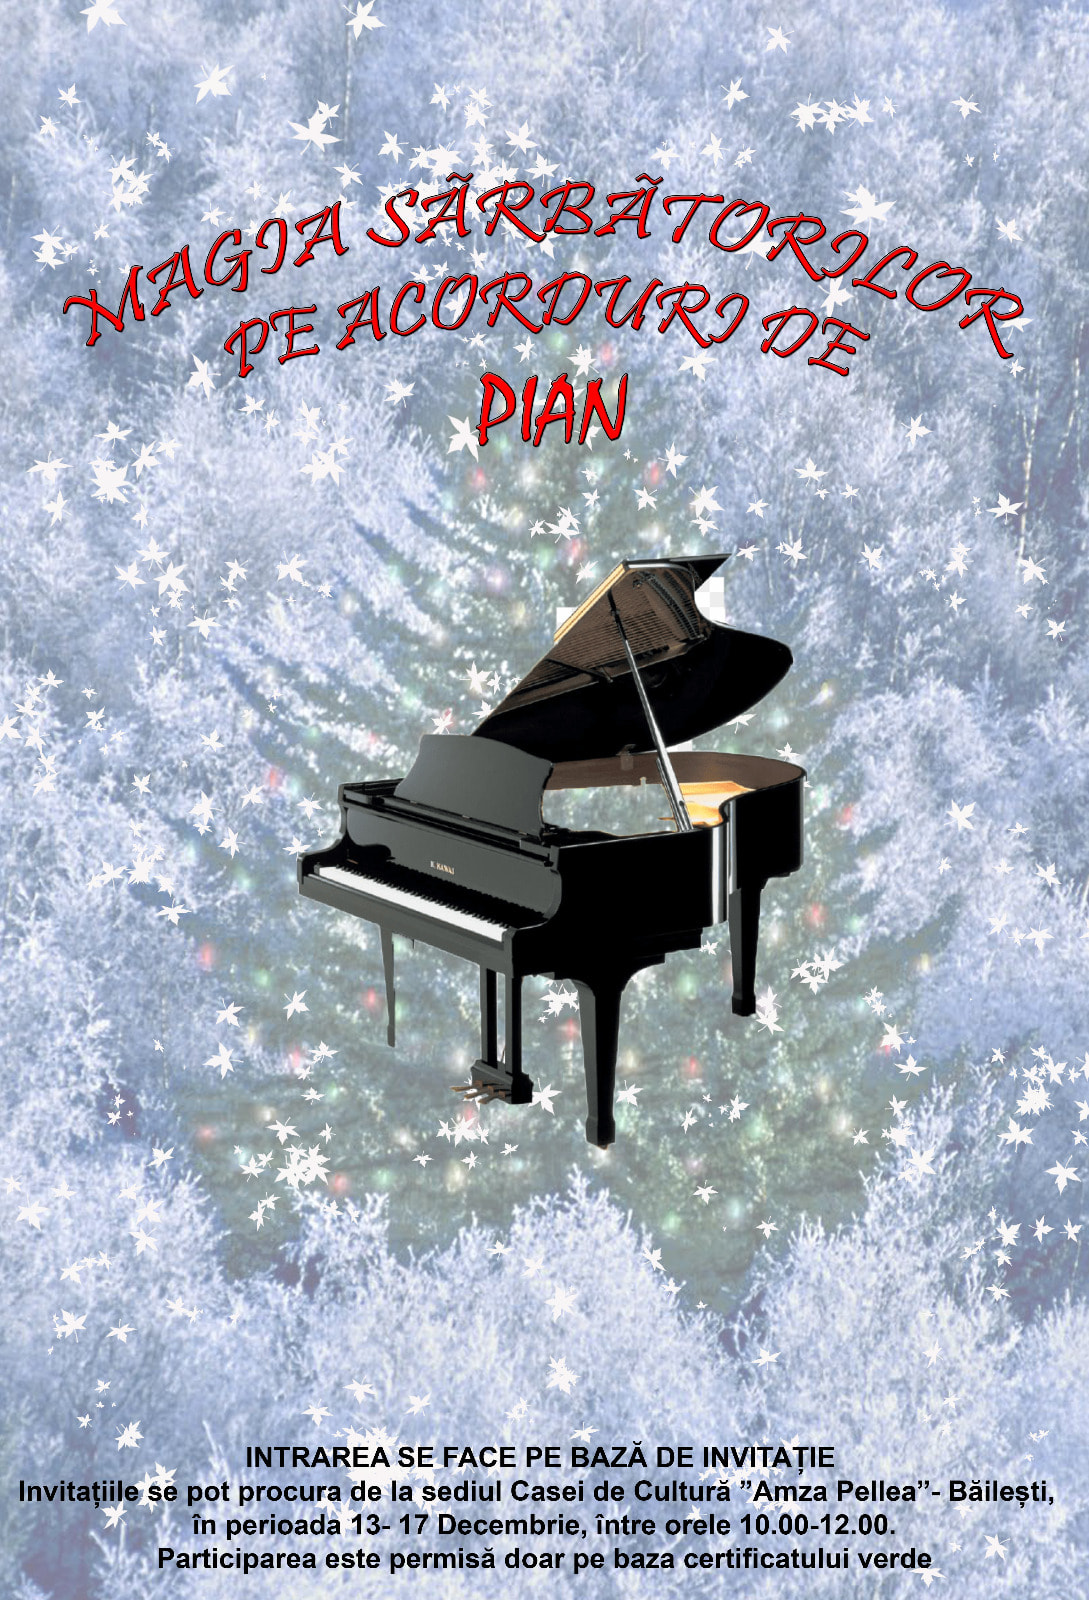 "Magia sărbătorilor pe acorduri de pian"